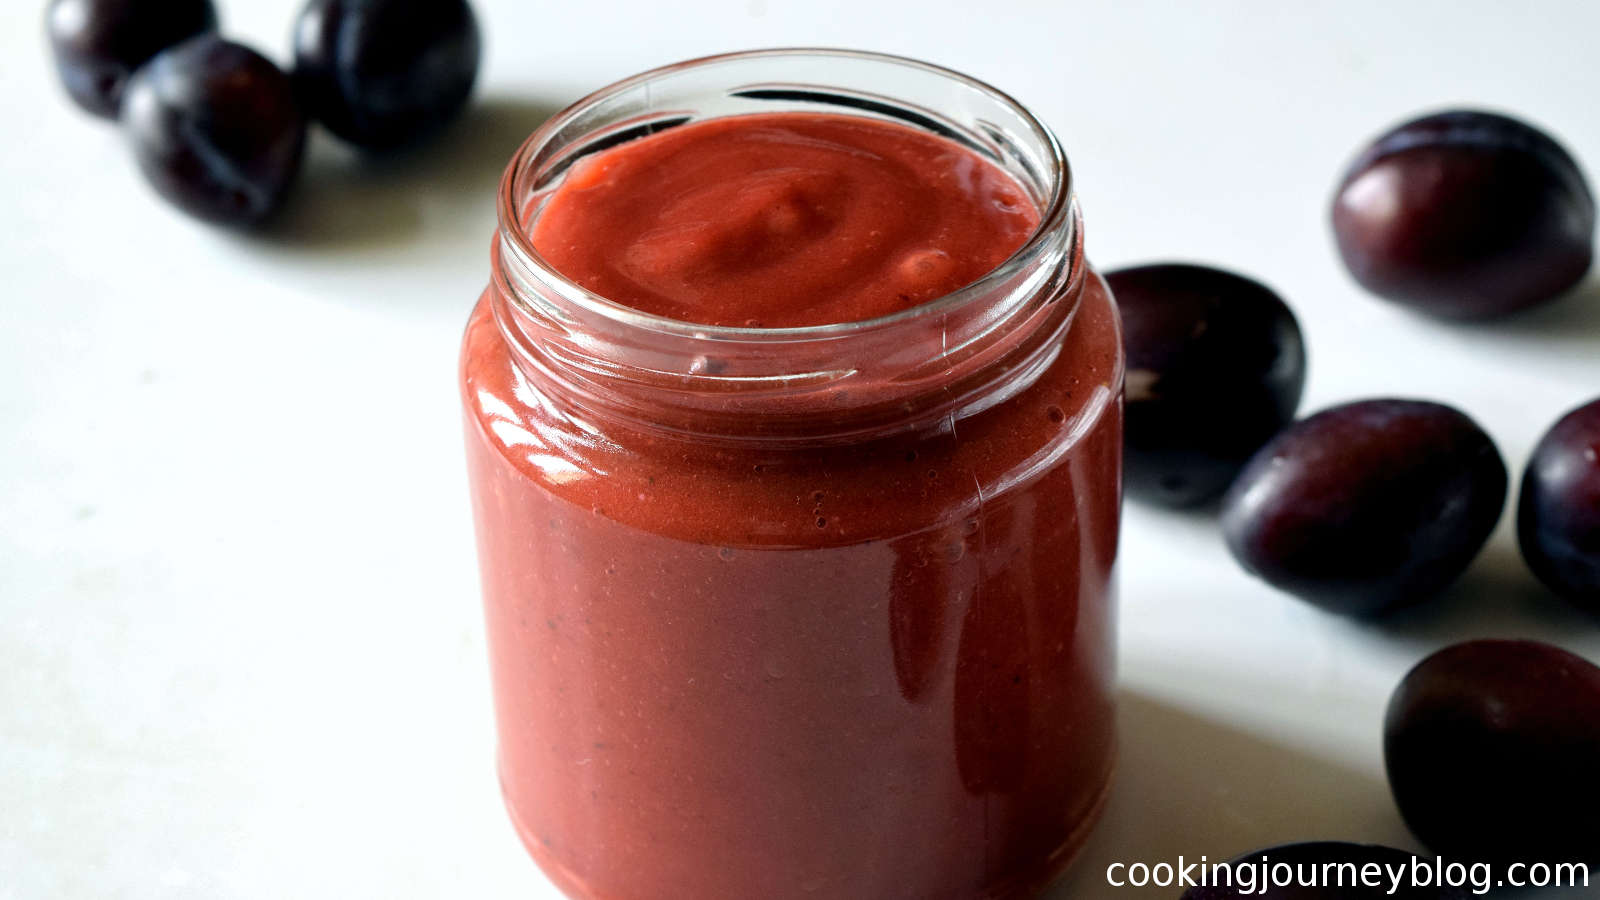 plum sauce in a glass jar